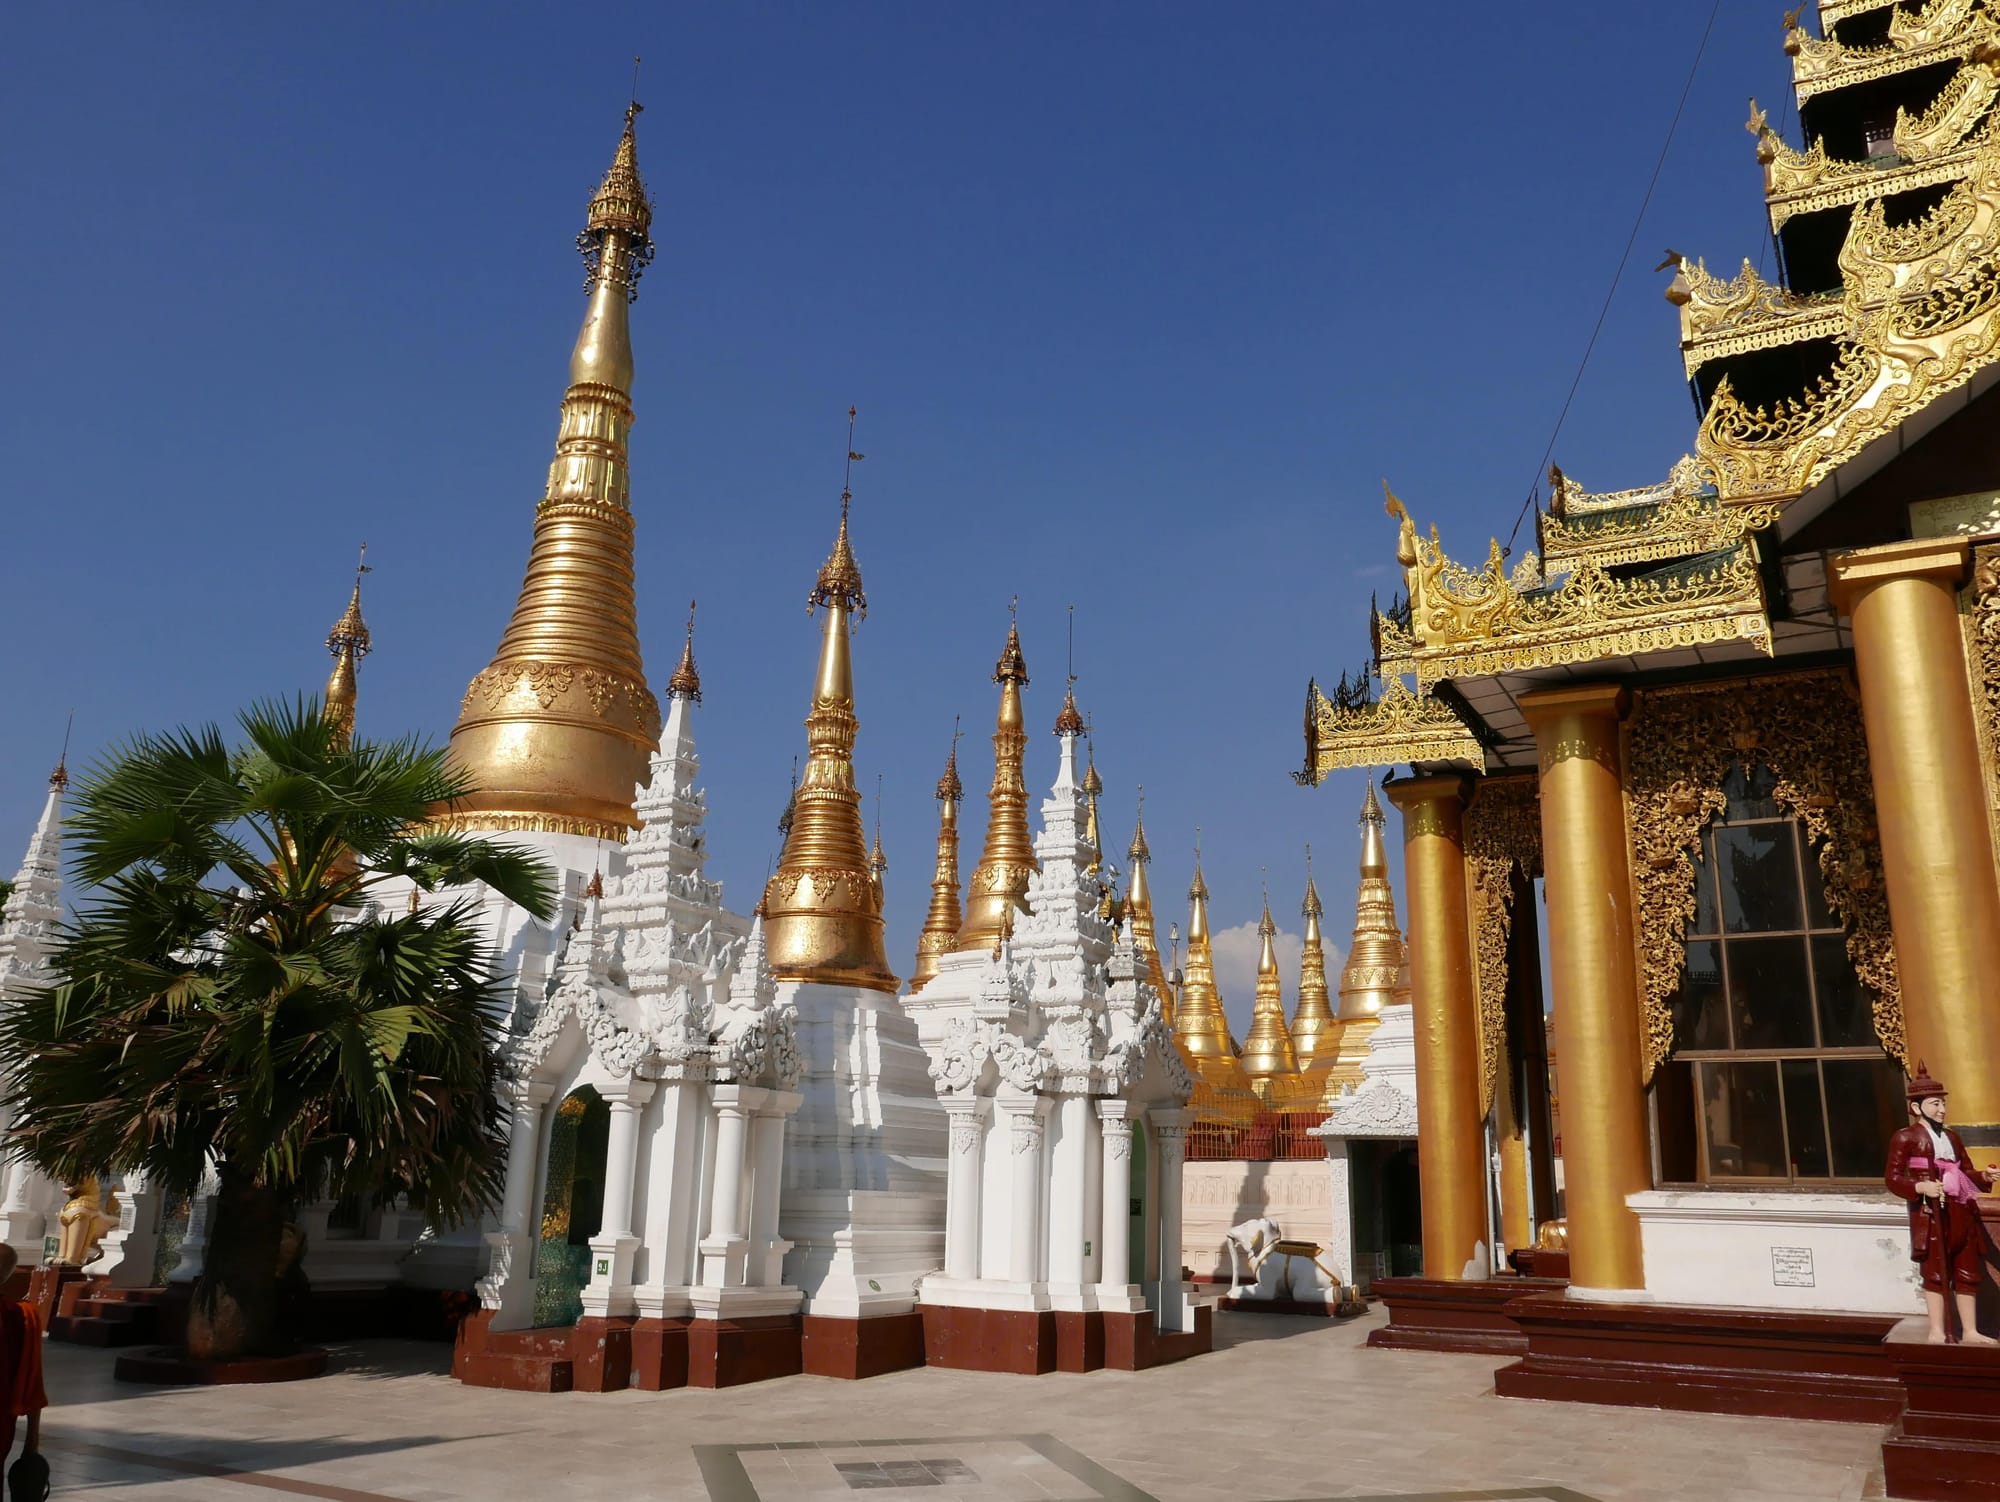 Photo by Author — the Shwedagon Pagoda